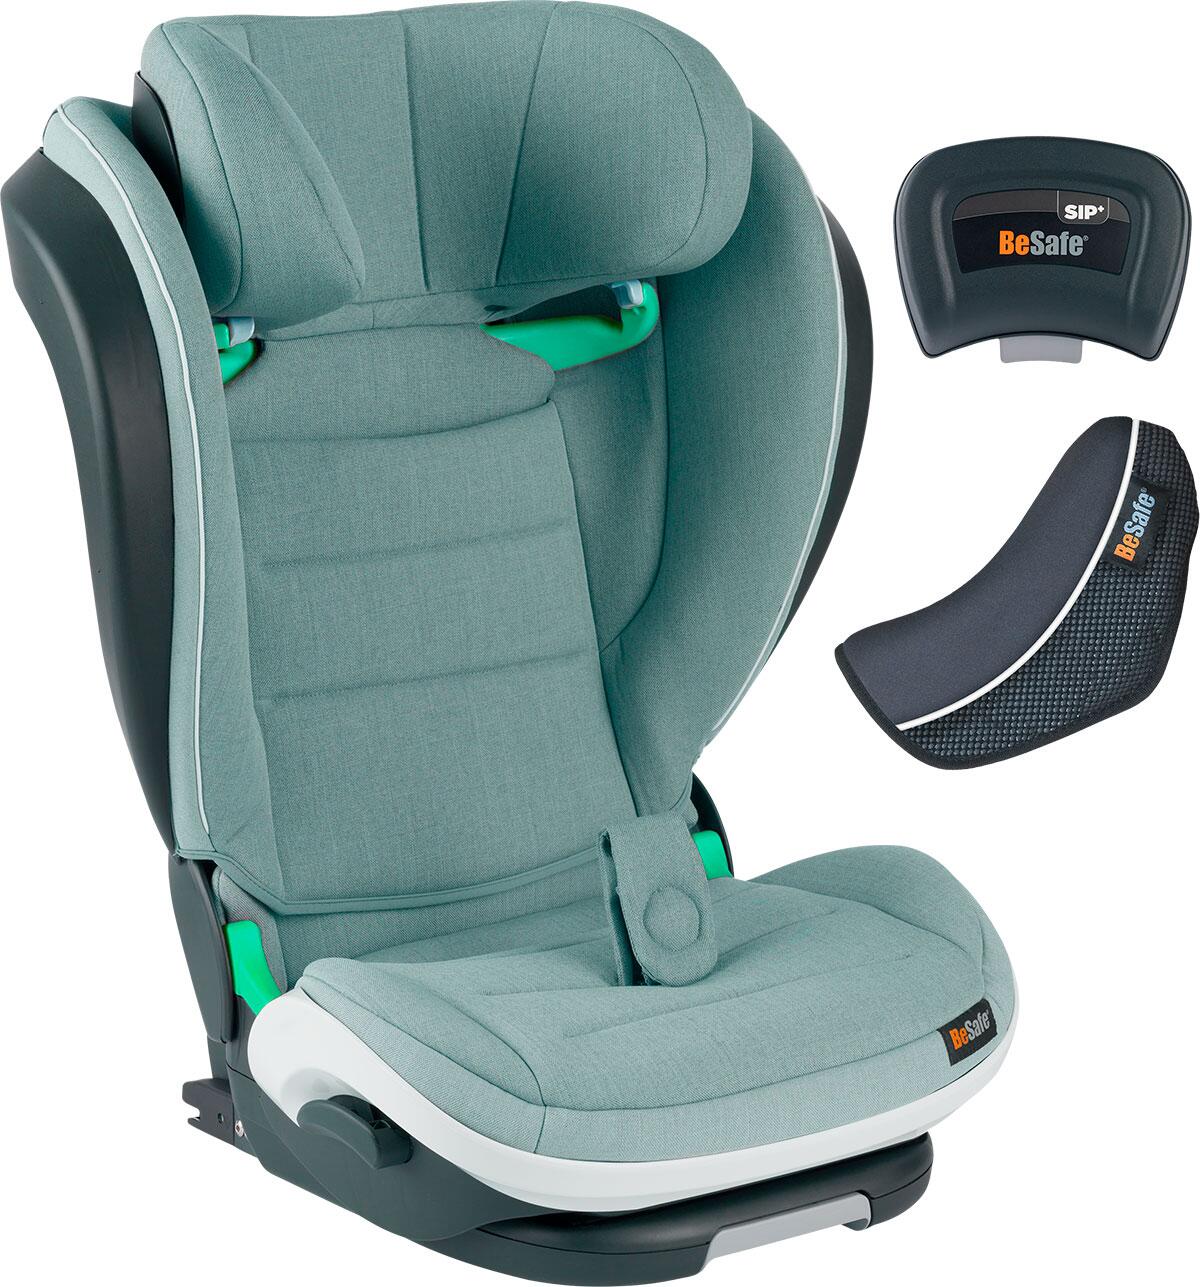 incluye correa de hombro almohadillas y guardia pad 5/3/2 punto ajustable para bebé Kid Safe para silla de paseo silla de alta Negro Guardia Pad Cinturón por Zama 